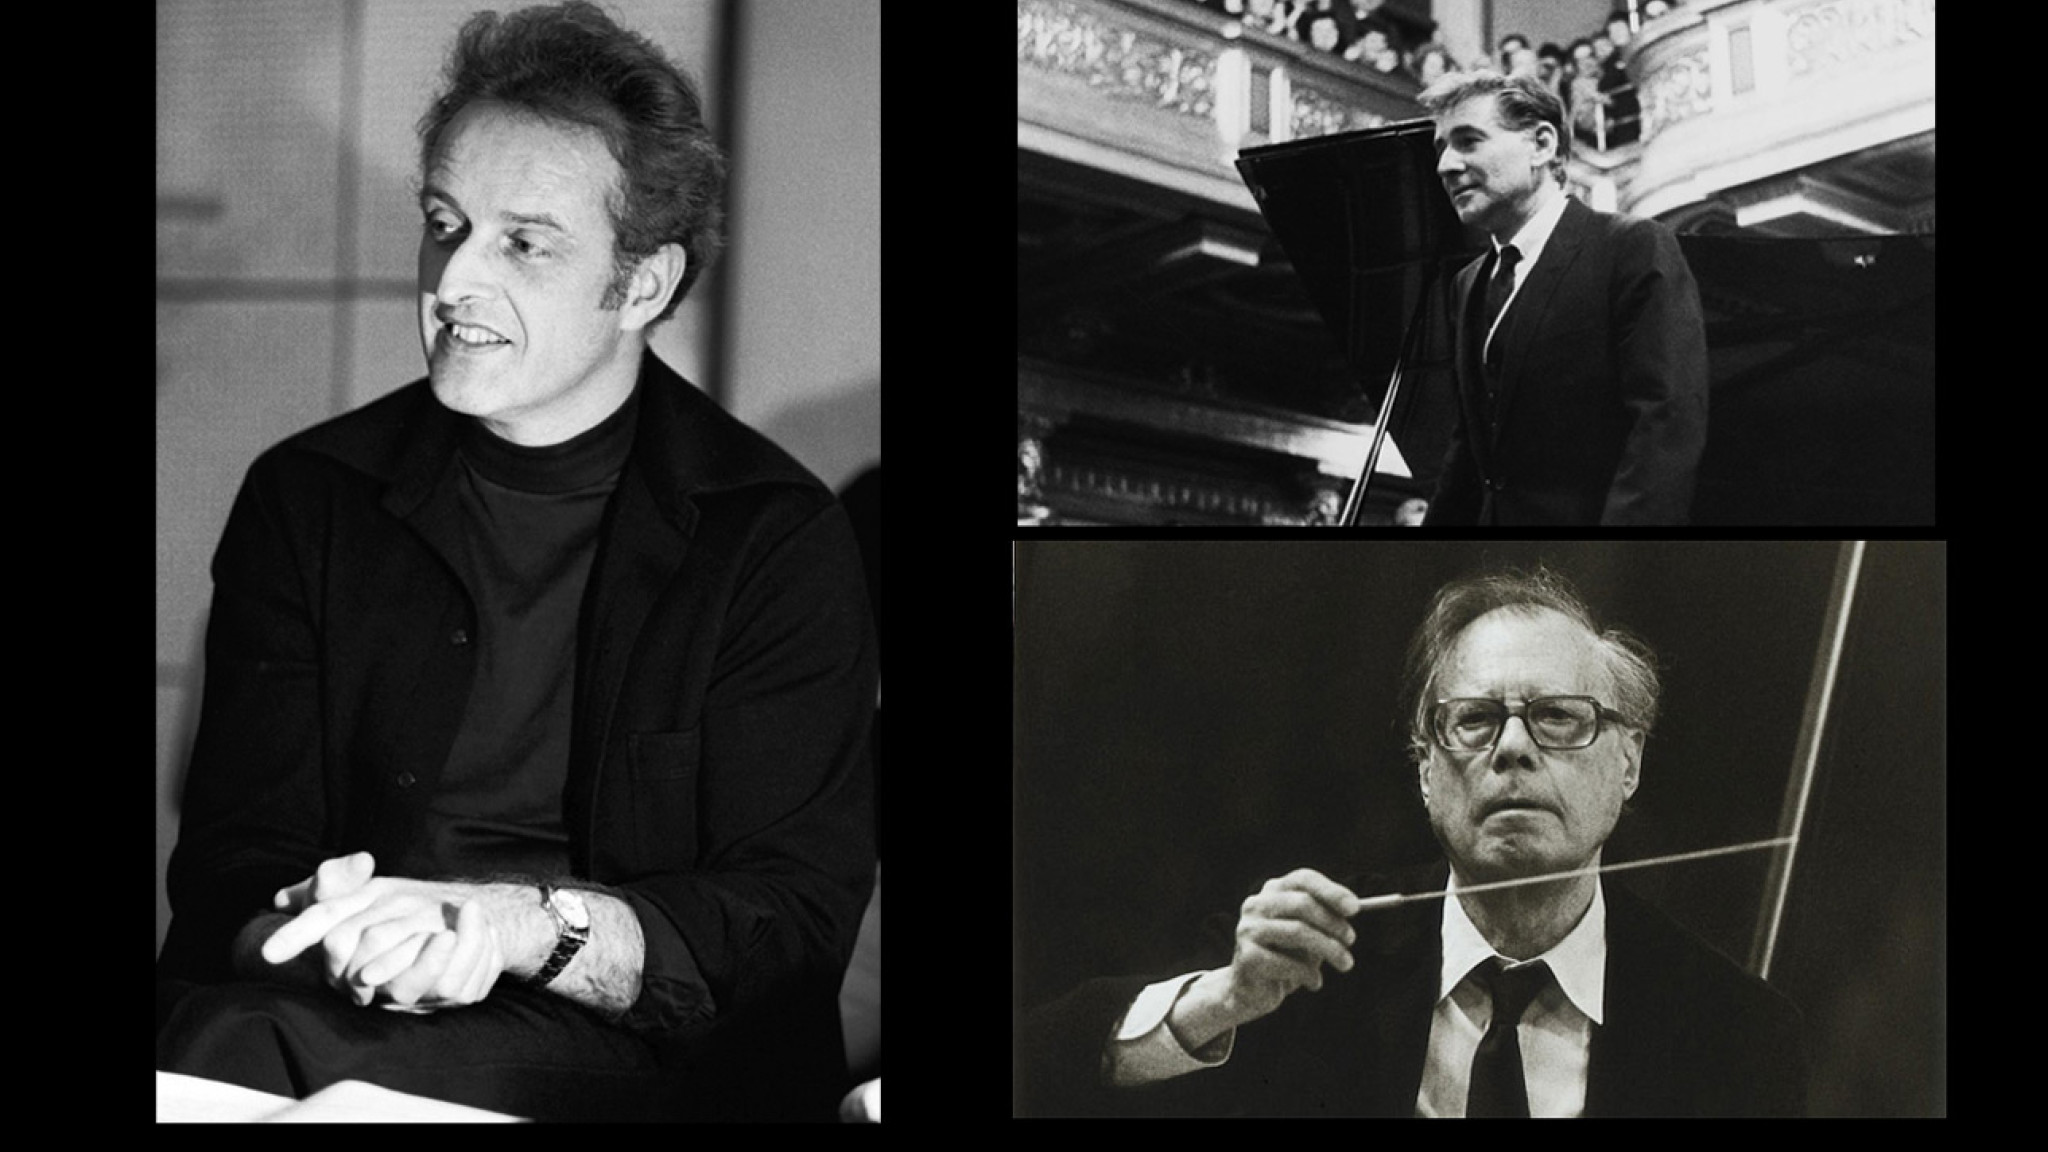 Carlos Kleiber, Karl Böhm, Leonard Bernstein